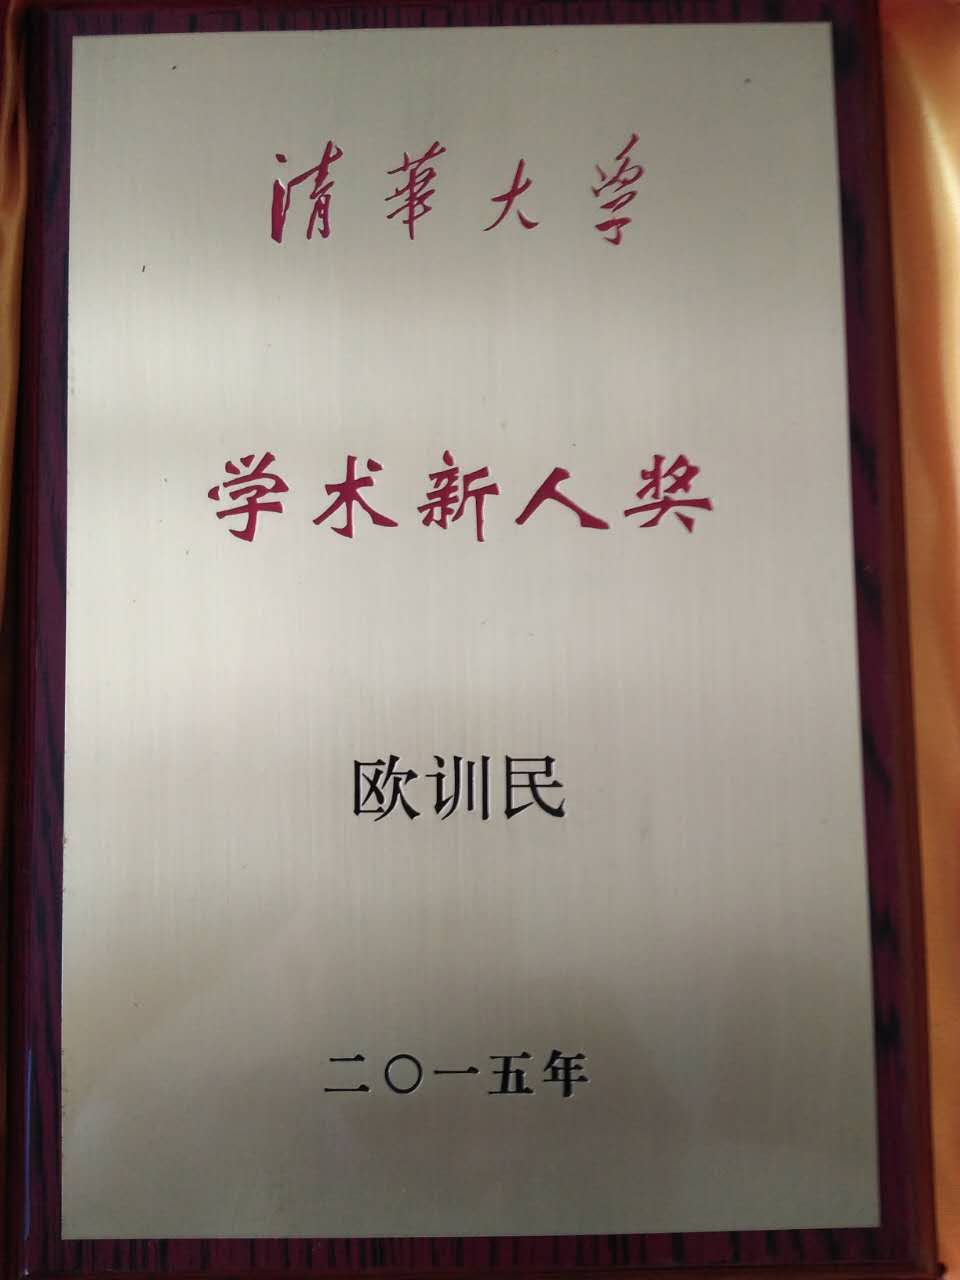 歐訓民榮獲清華大學學術新人獎